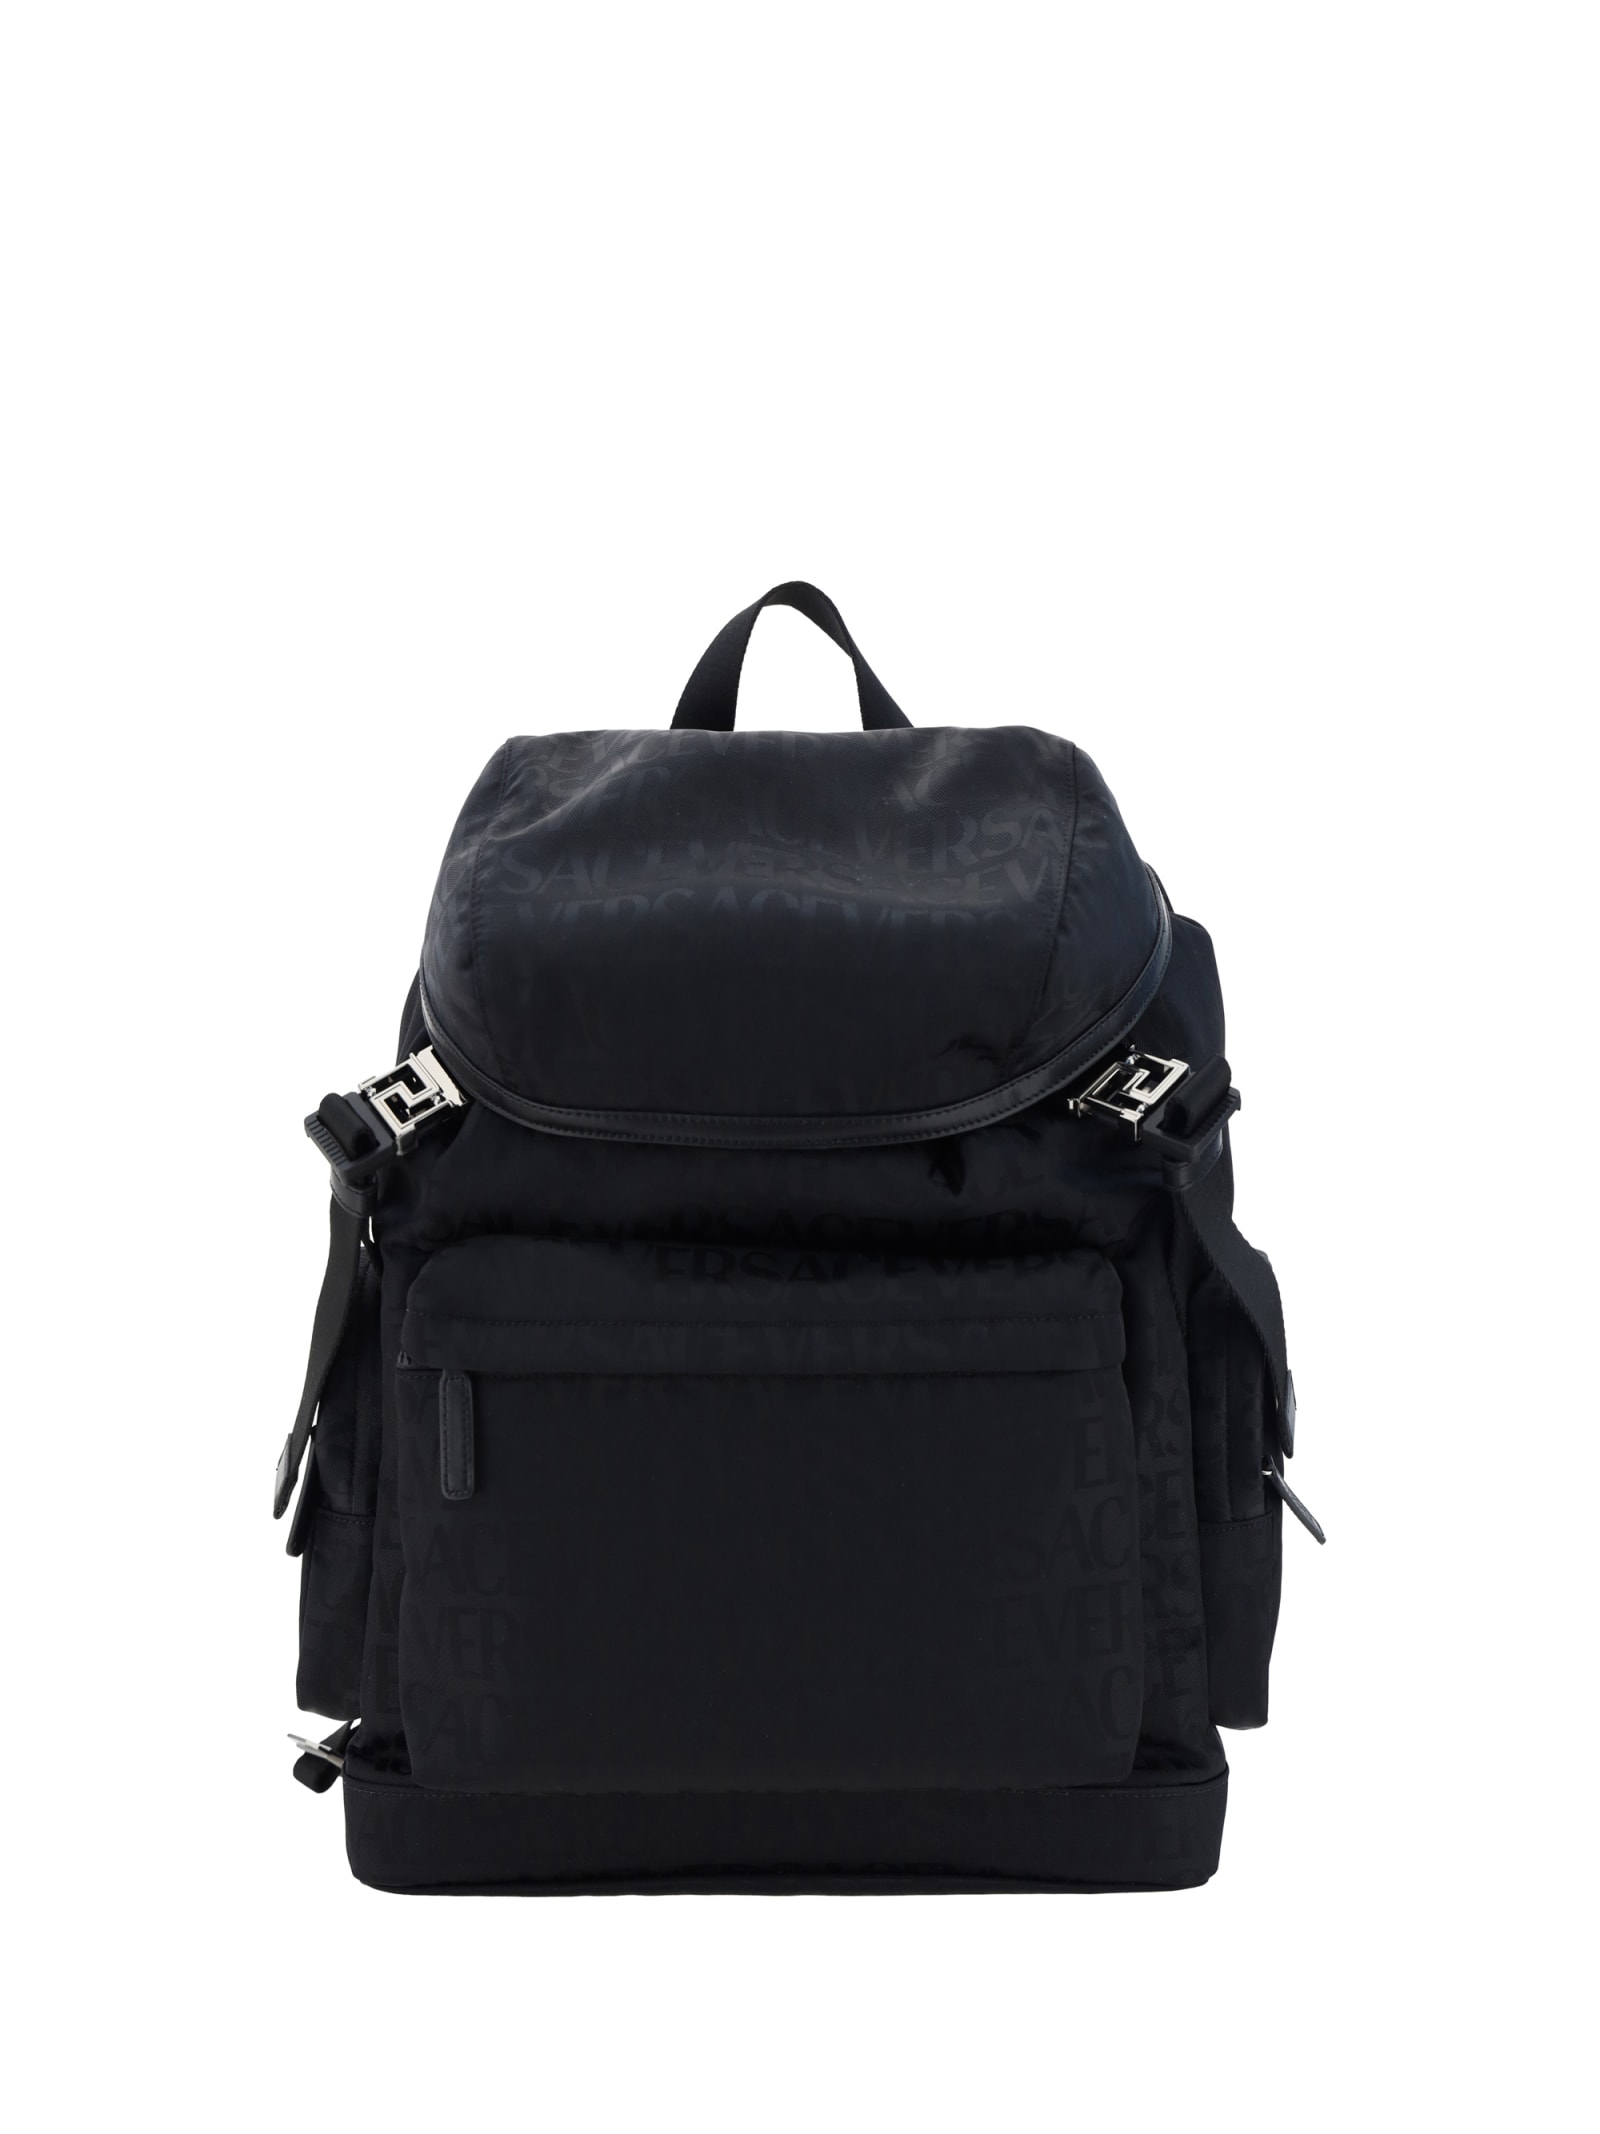 Shop Versace Backpack In Black